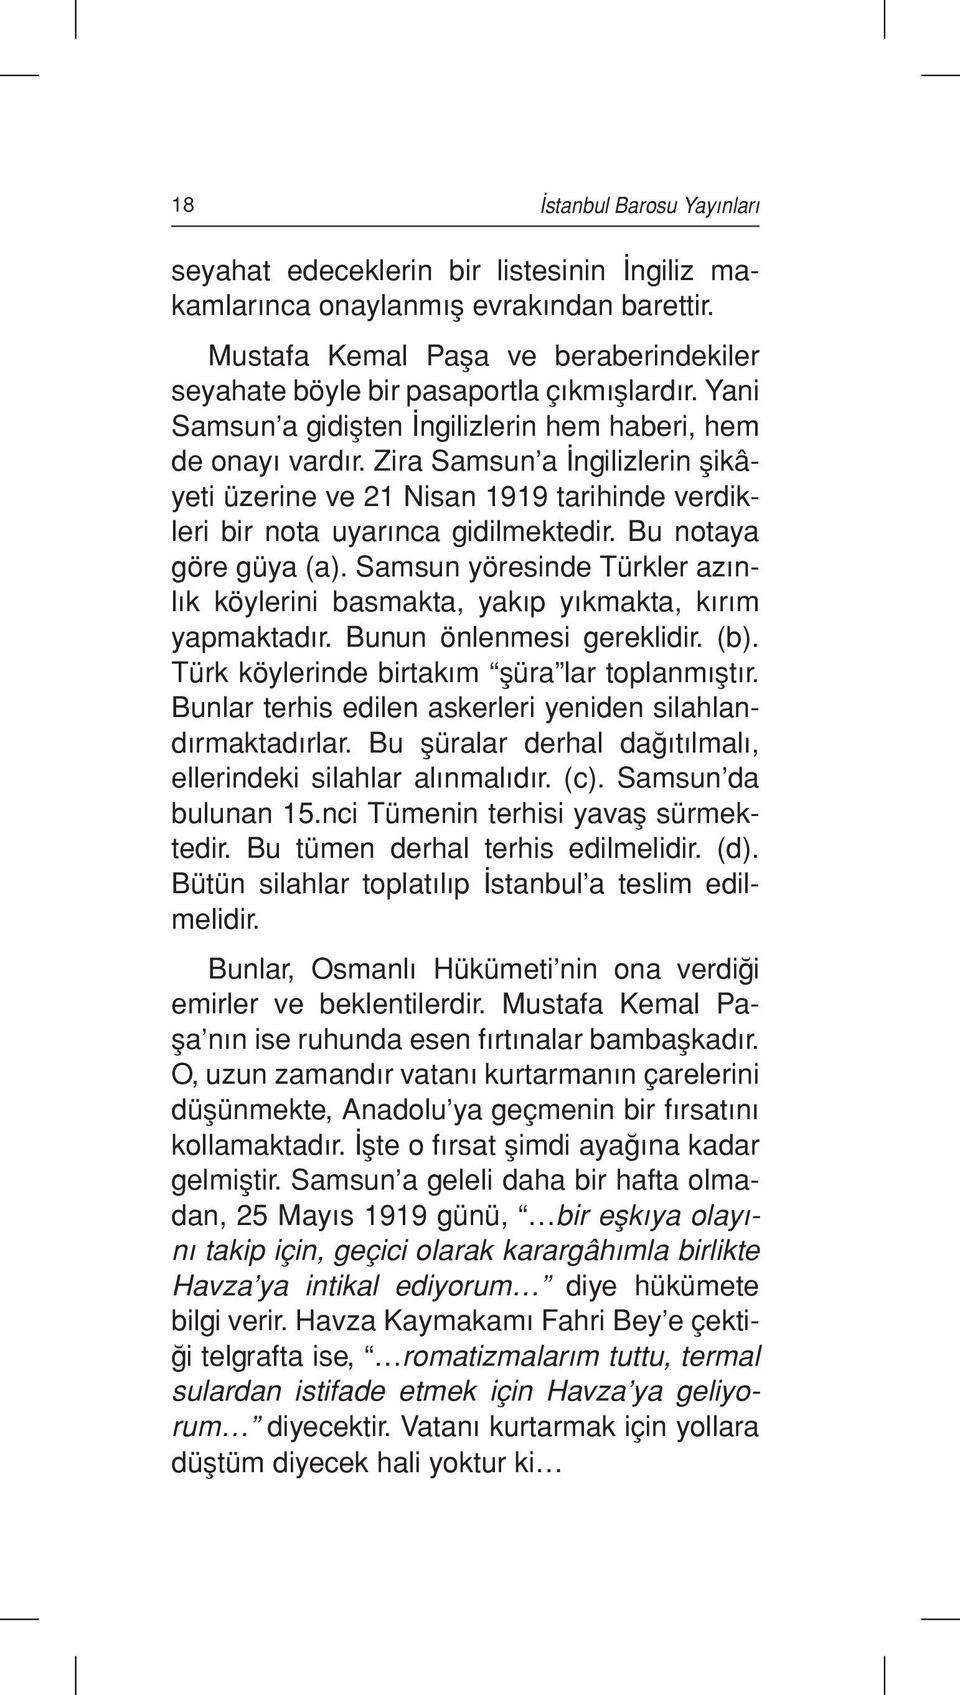 Bu notaya göre güya (a). Samsun yöresinde Türkler azınlık köylerini basmakta, yakıp yıkmakta, kırım yapmaktadır. Bunun önlenmesi gereklidir. (b). Türk köylerinde birtakım şüra lar toplanmıştır.